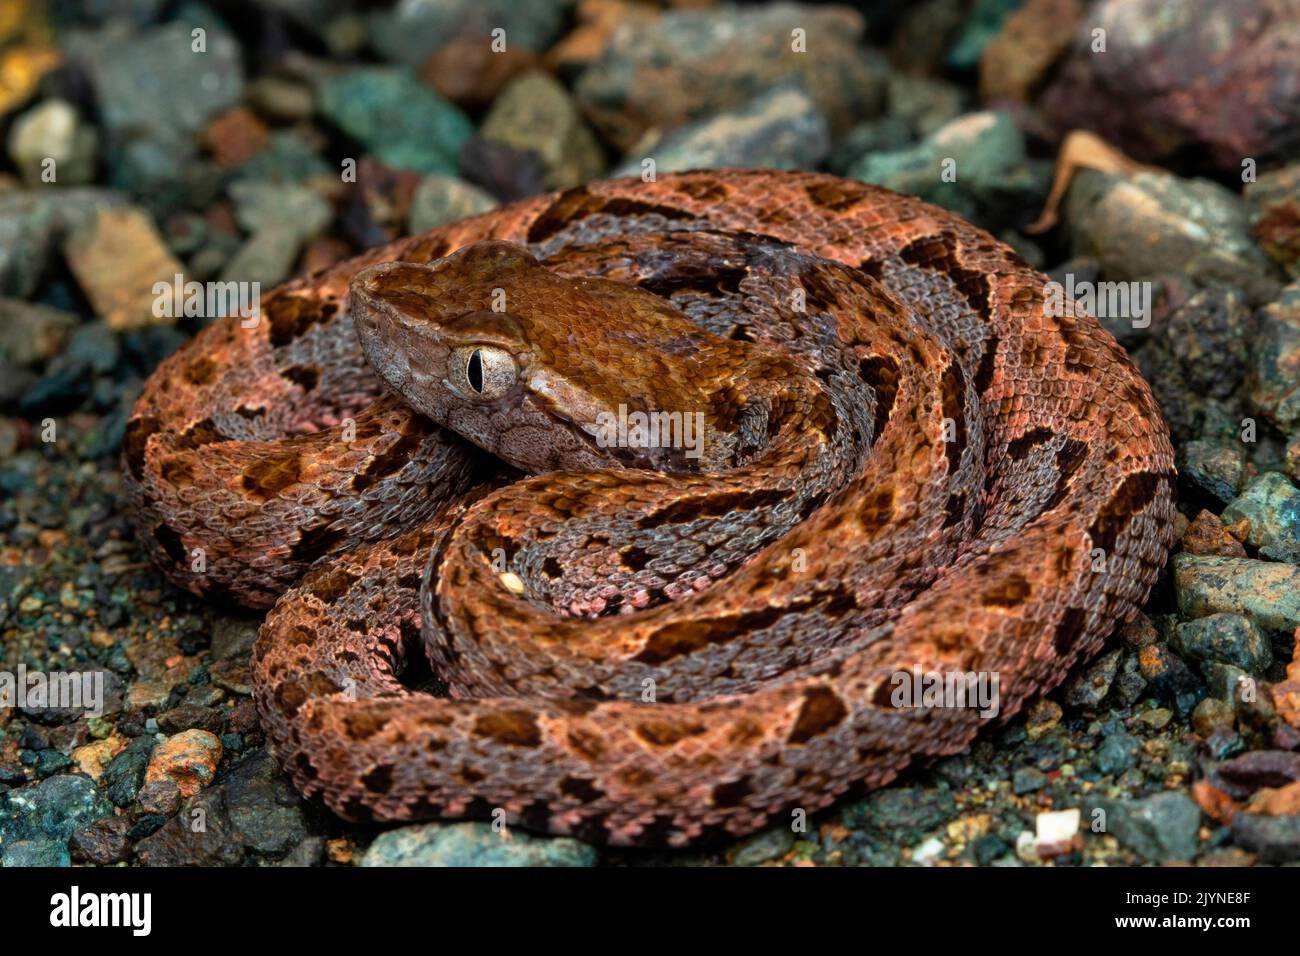 Lancehead snake (Bothrops asper) young, Rancho Quemado, Osa, Costa Rica Stock Photo